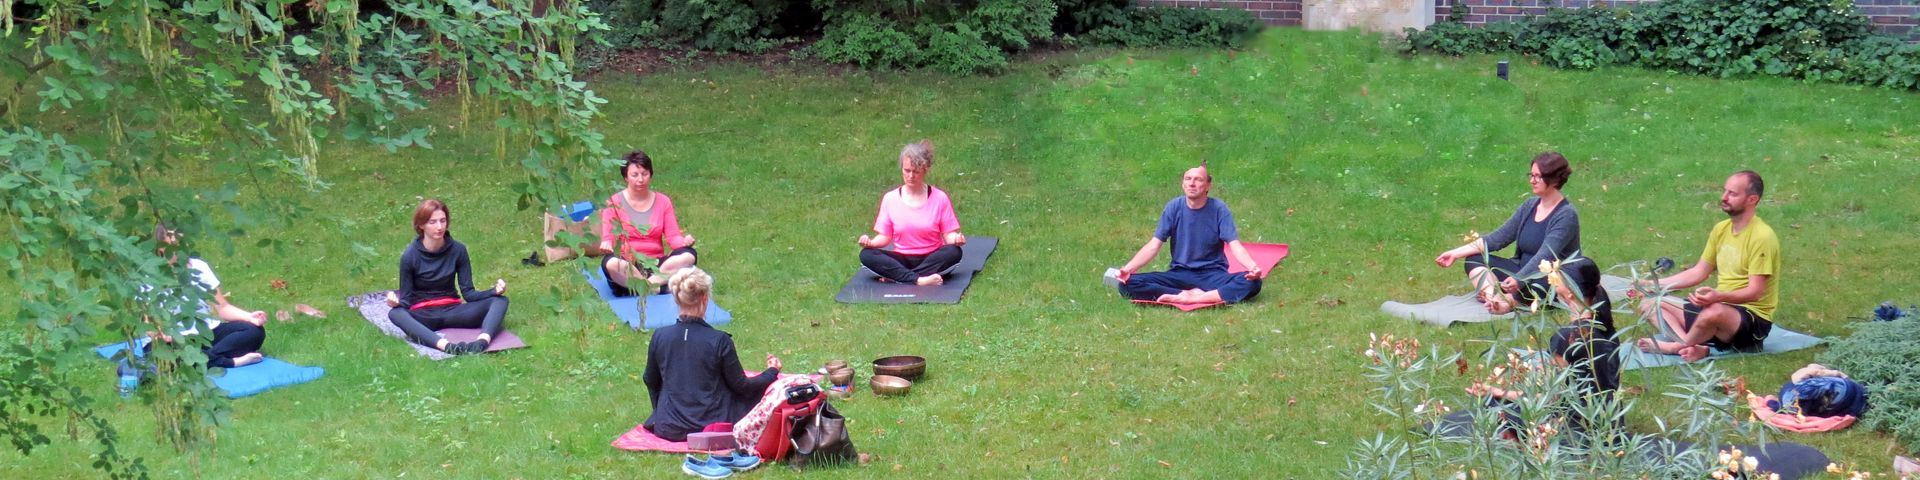 A+S Mitarbeiter praktizieren Yoga im Freien